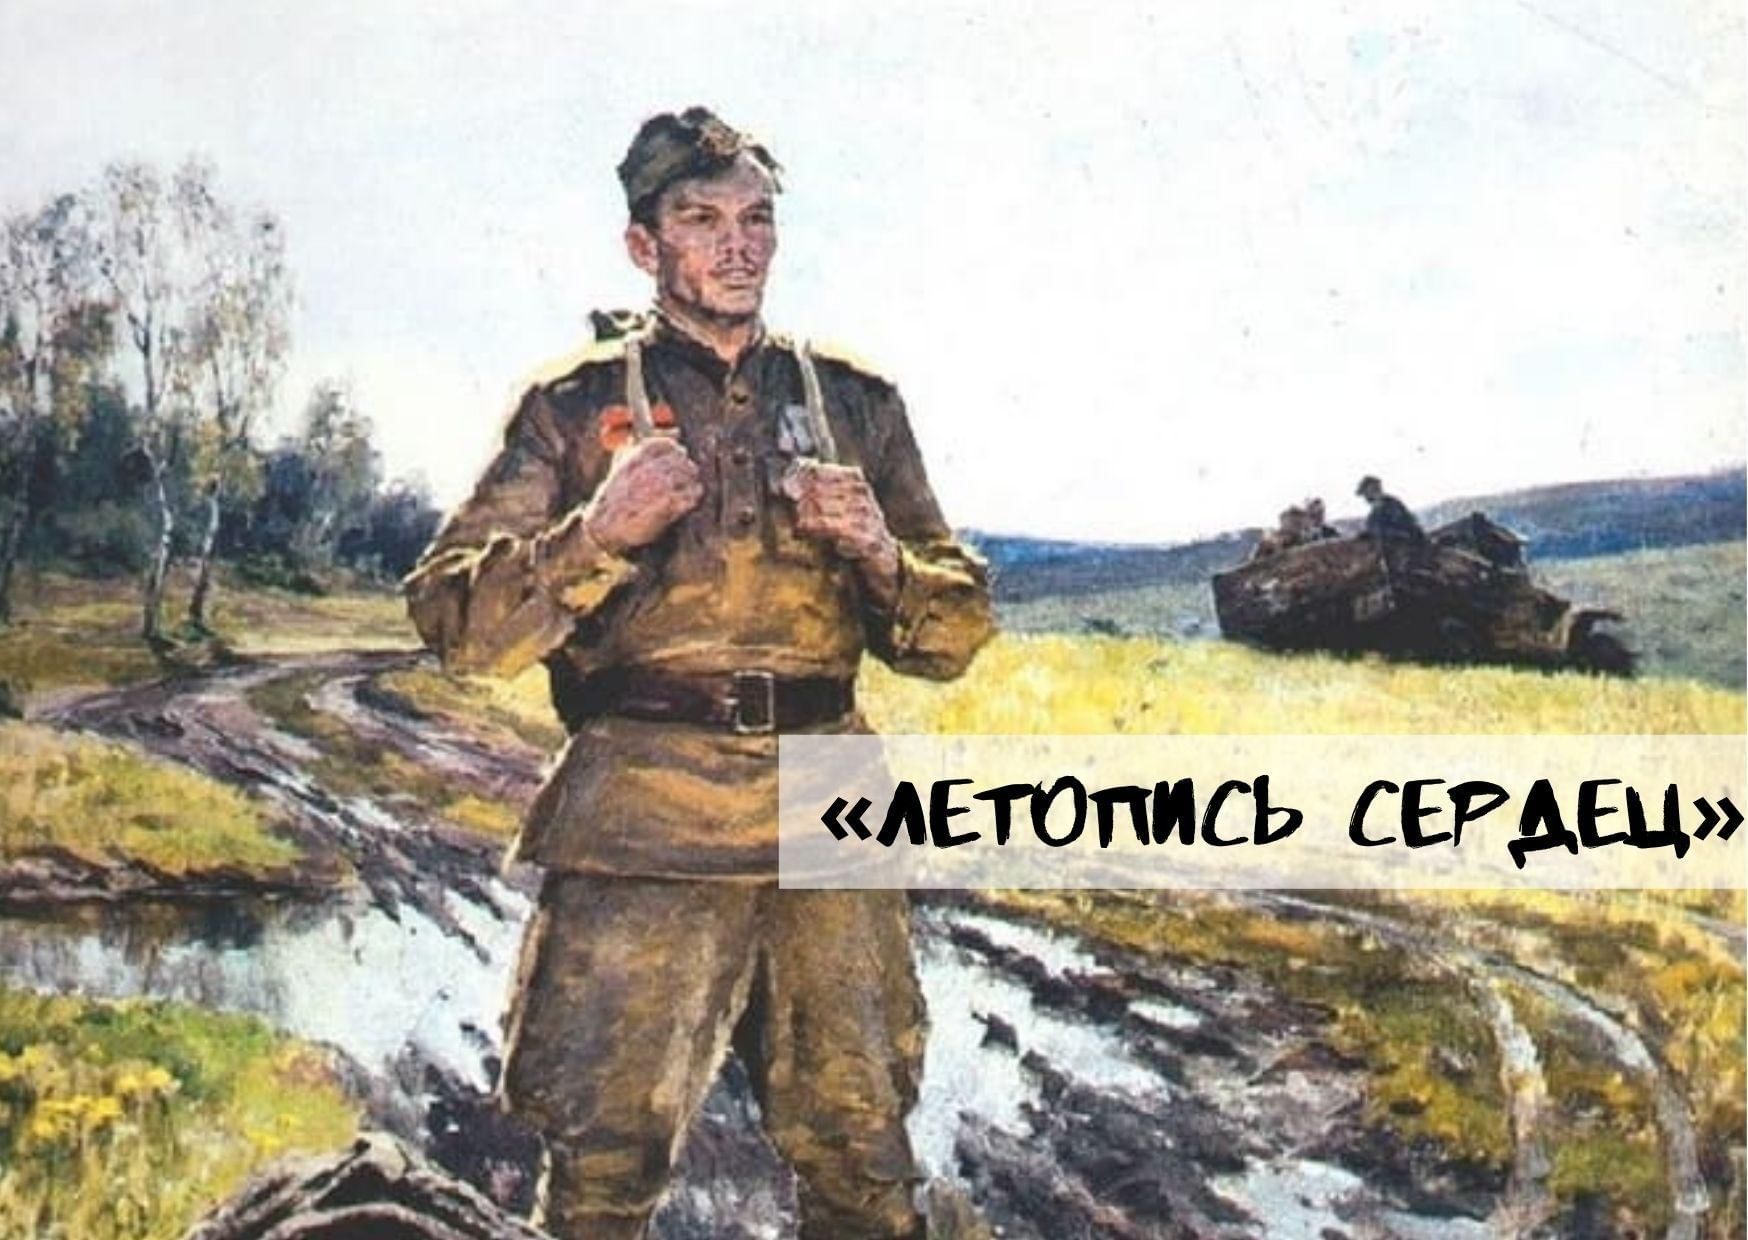 Нашел солдат в широком поле. Солдат картина художника. Пейзаж Великой Отечественной войны. Солдат вернулся живопись. Советский солдат живопись.